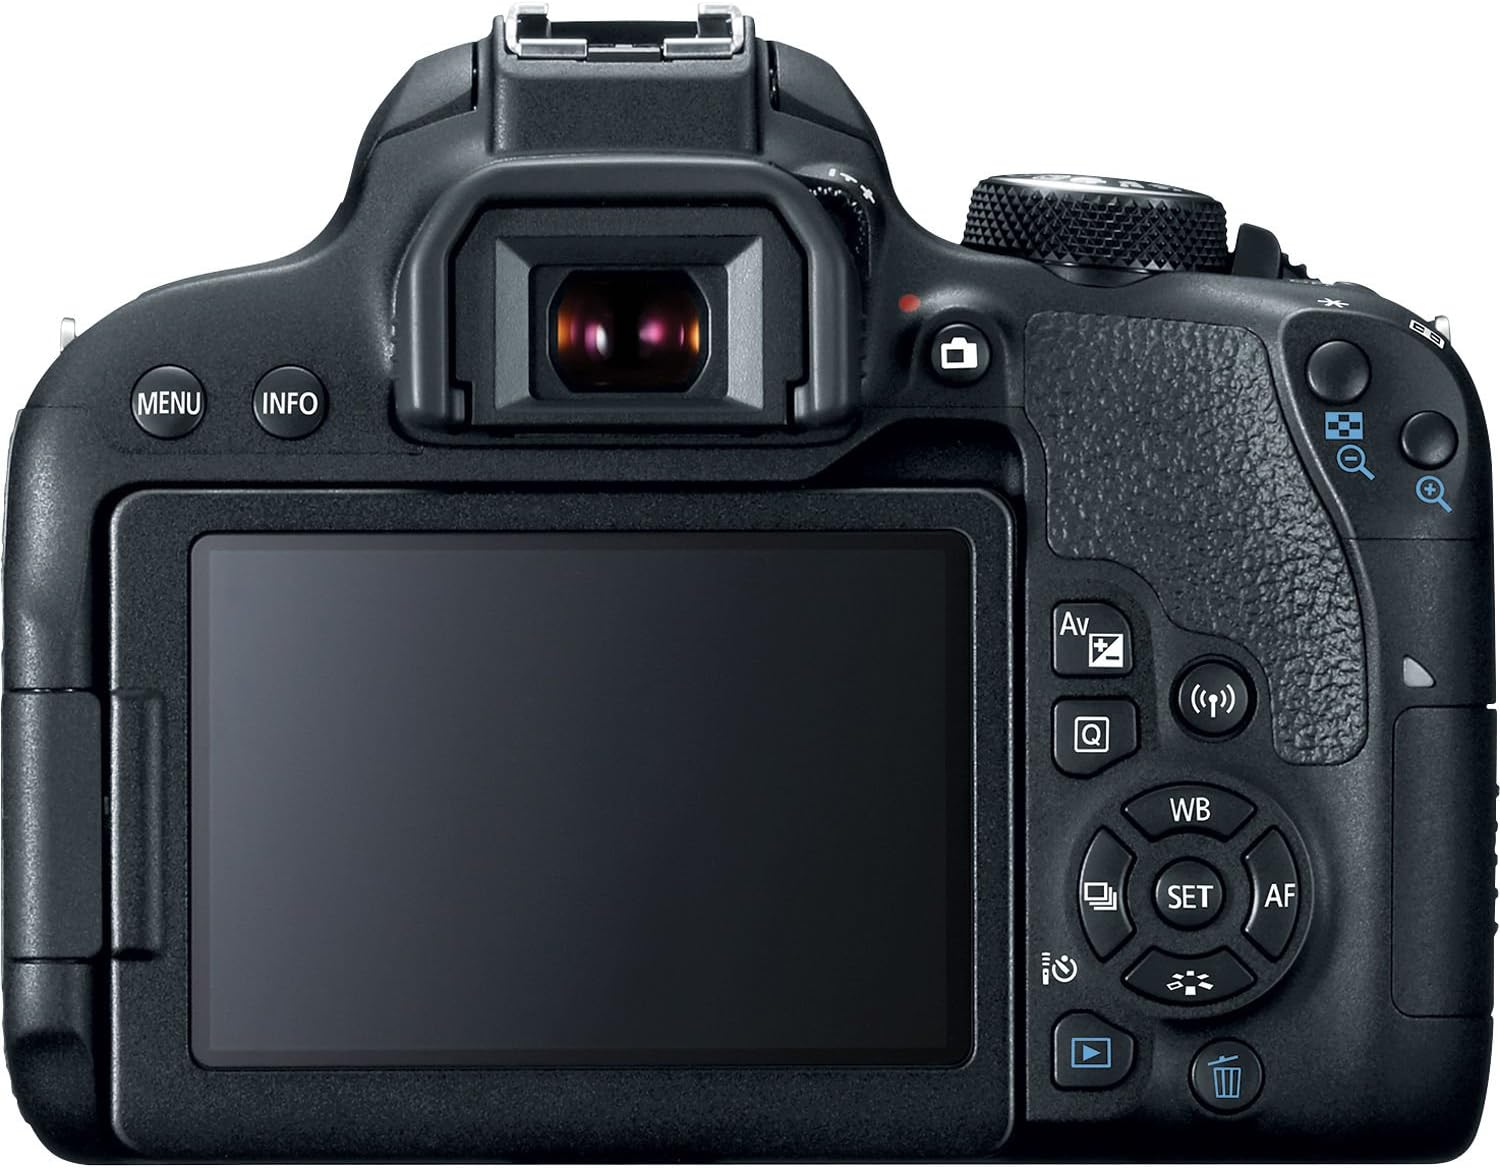 Canon EOS Rebel 800D / T7i DSLR Camera + 4K Monitor + Canon EF 24-70 + More